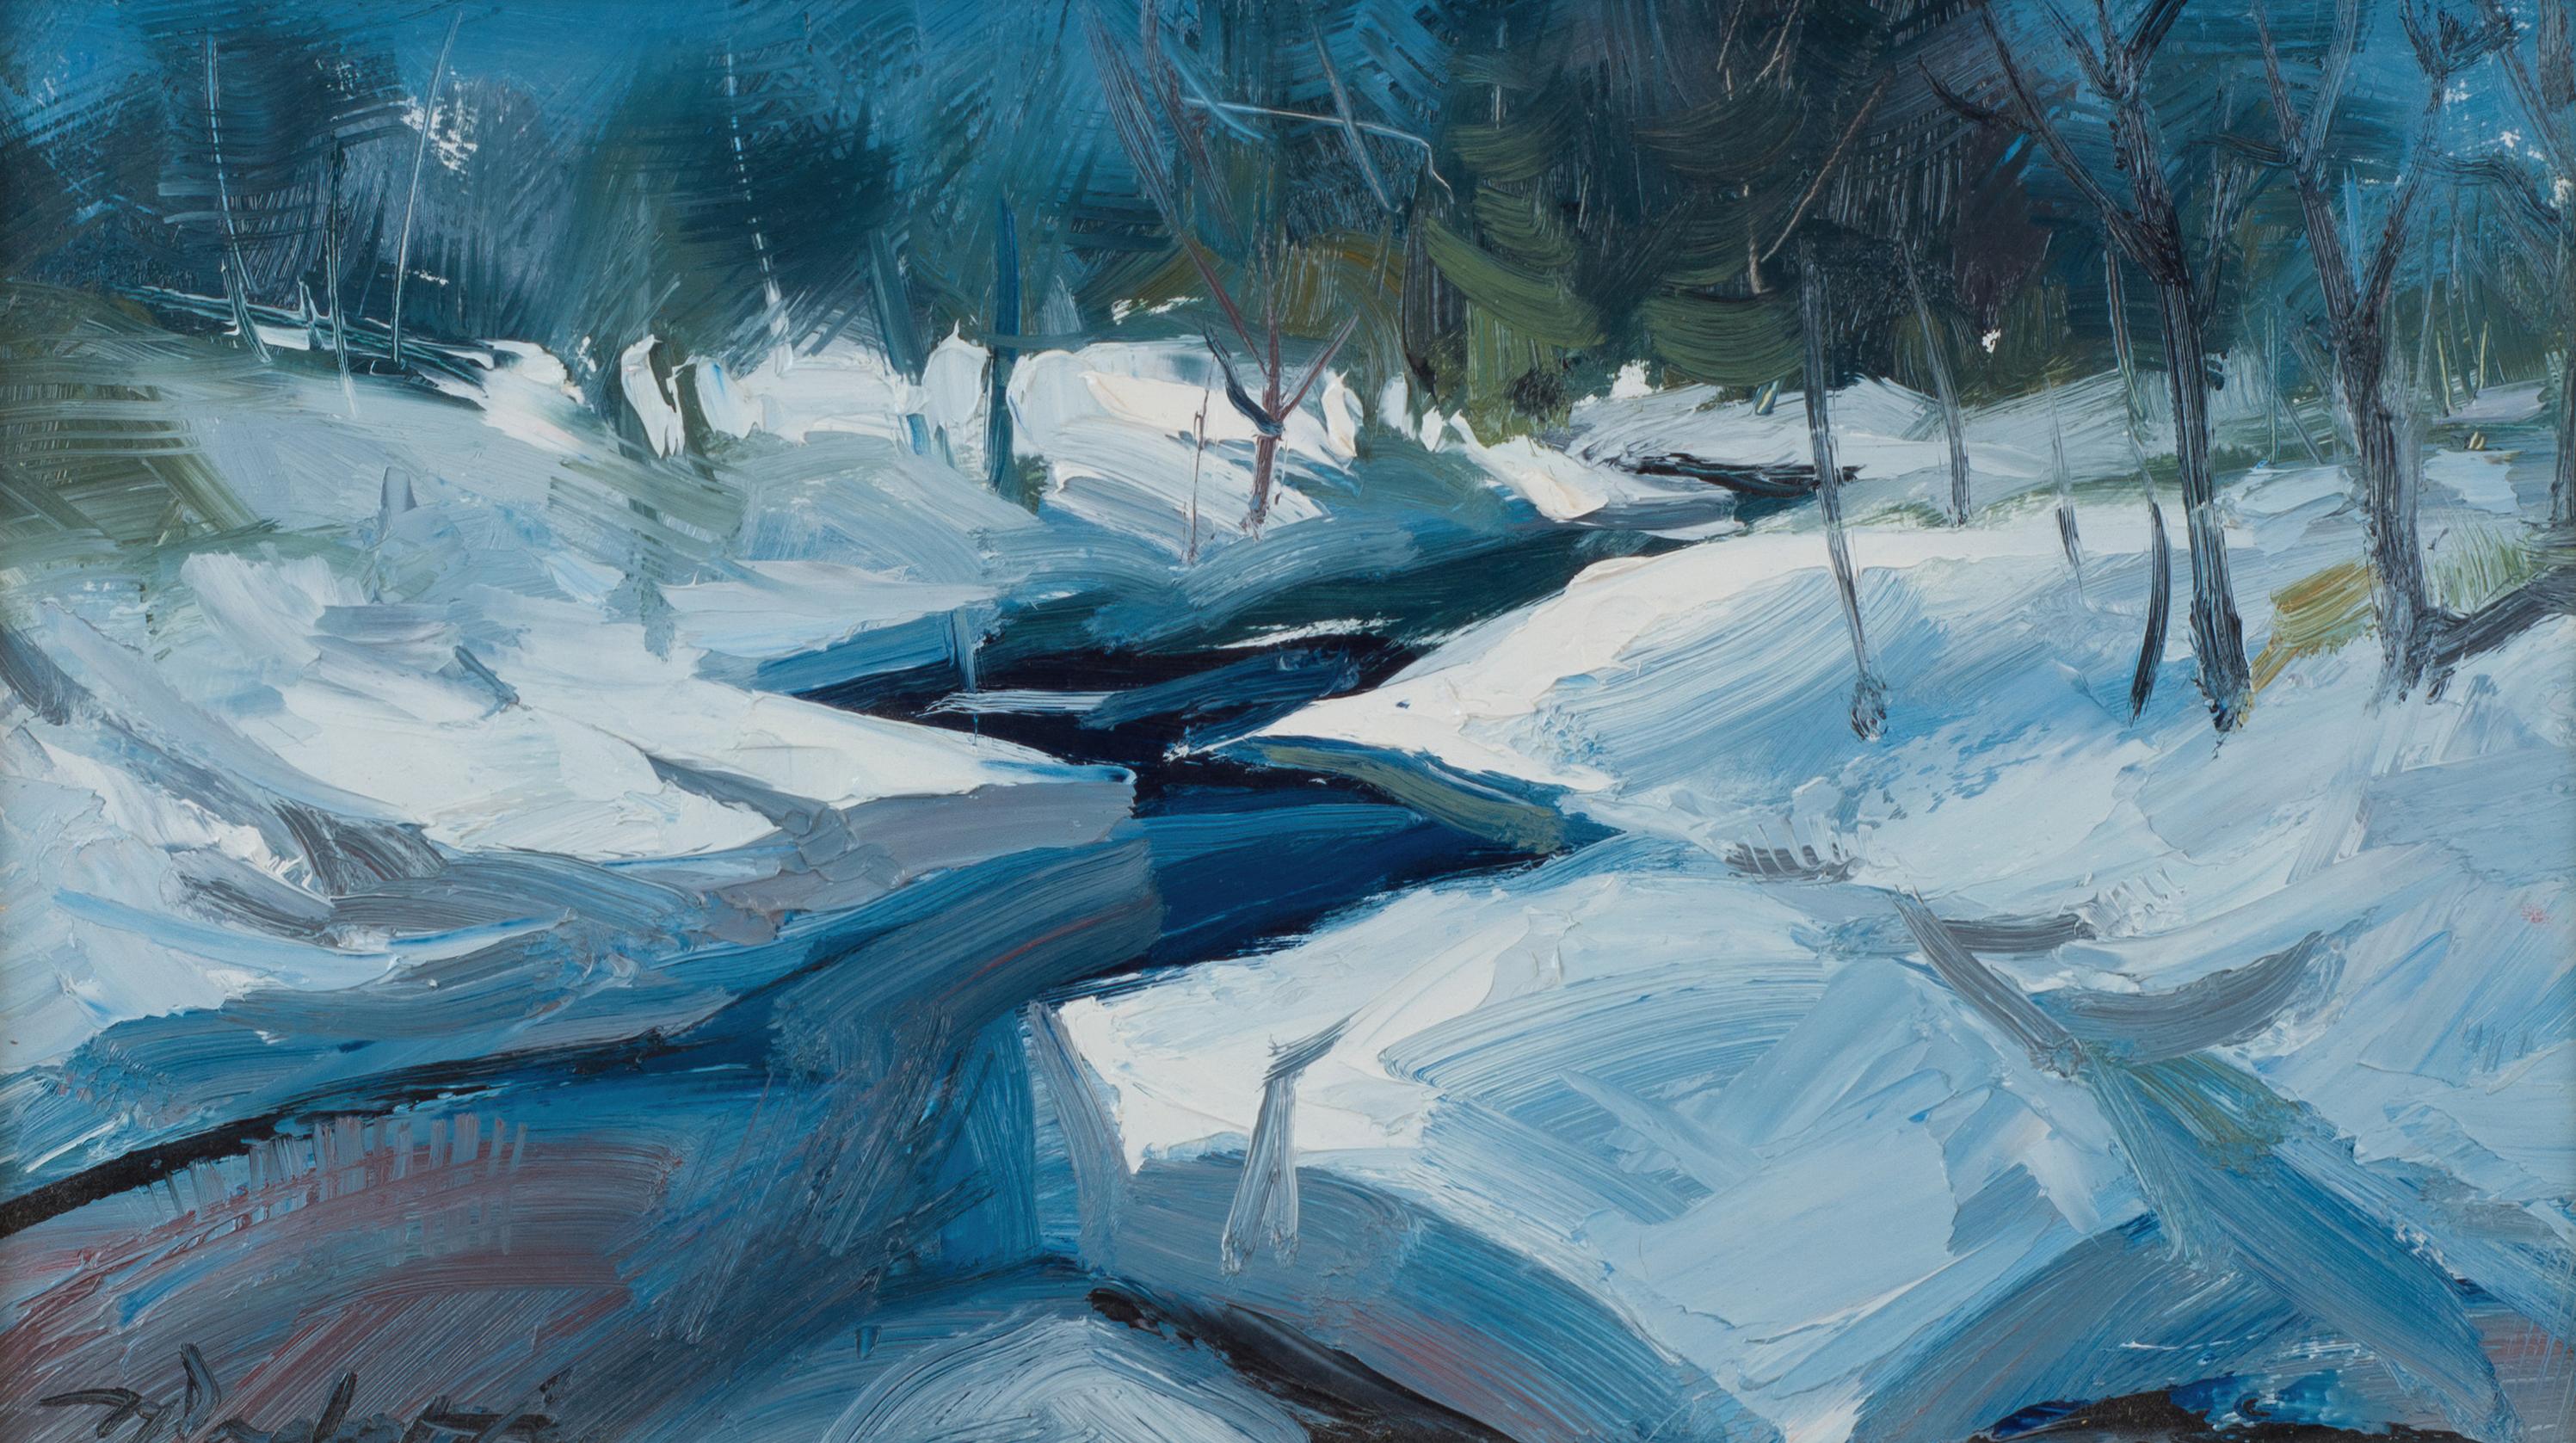 "U.P." A Winter Landscape Oil Painting of a Brilliante Blue Stream (Paysage d'hiver - peinture à l'huile d'un cours d'eau bleu brillant)